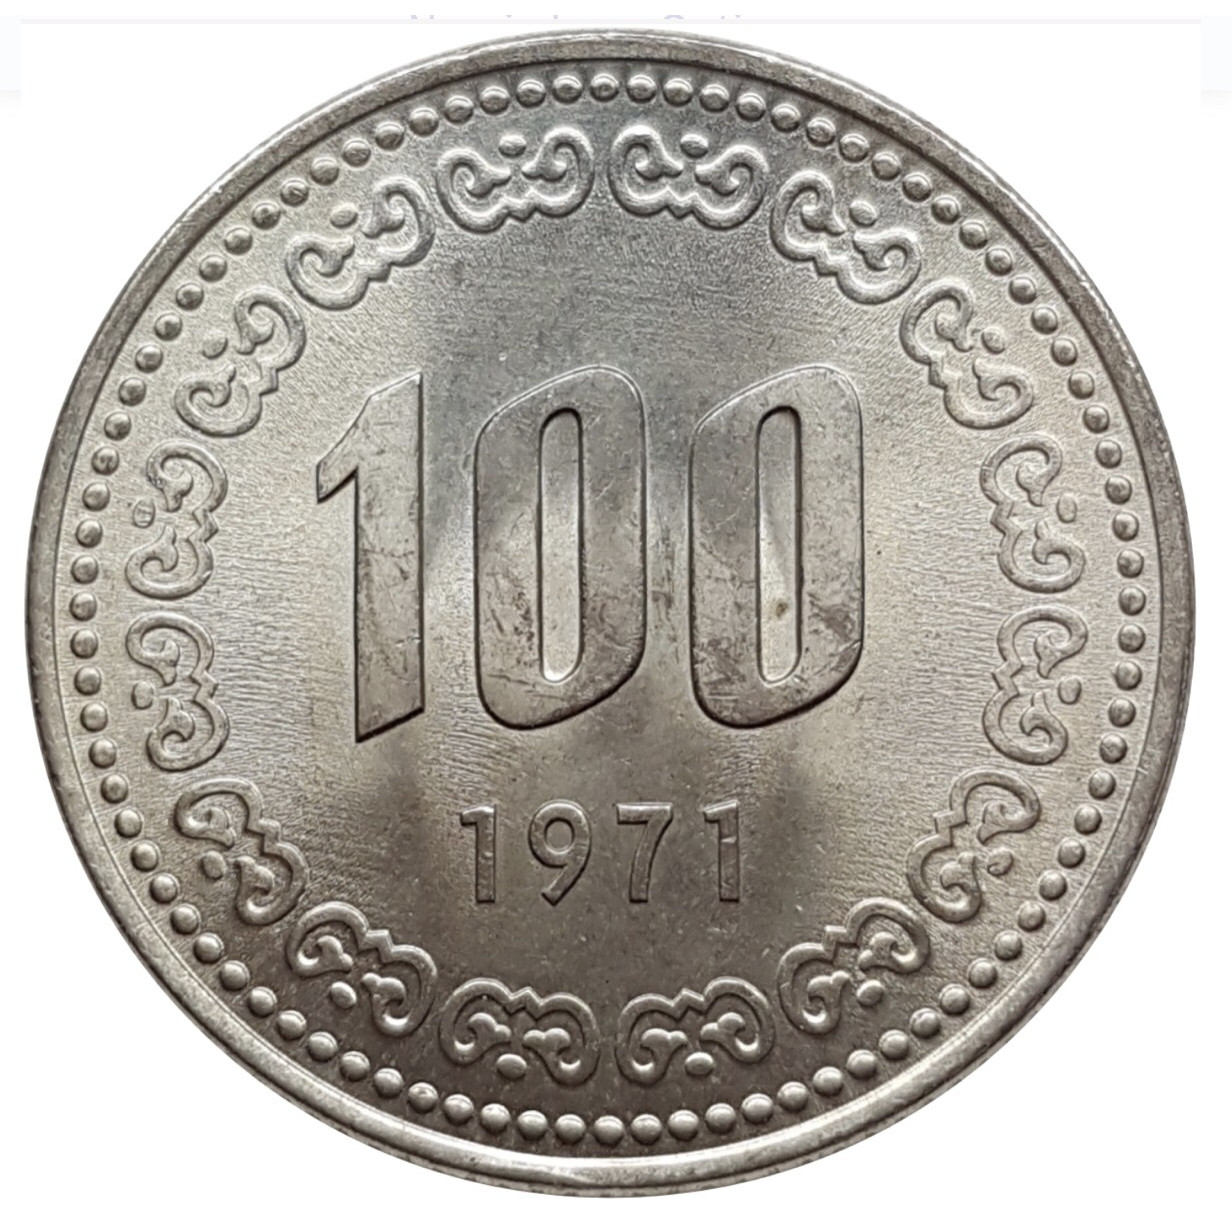 Đồng xu Hàn Quốc 100 won phiên bản cũ sưu tầm